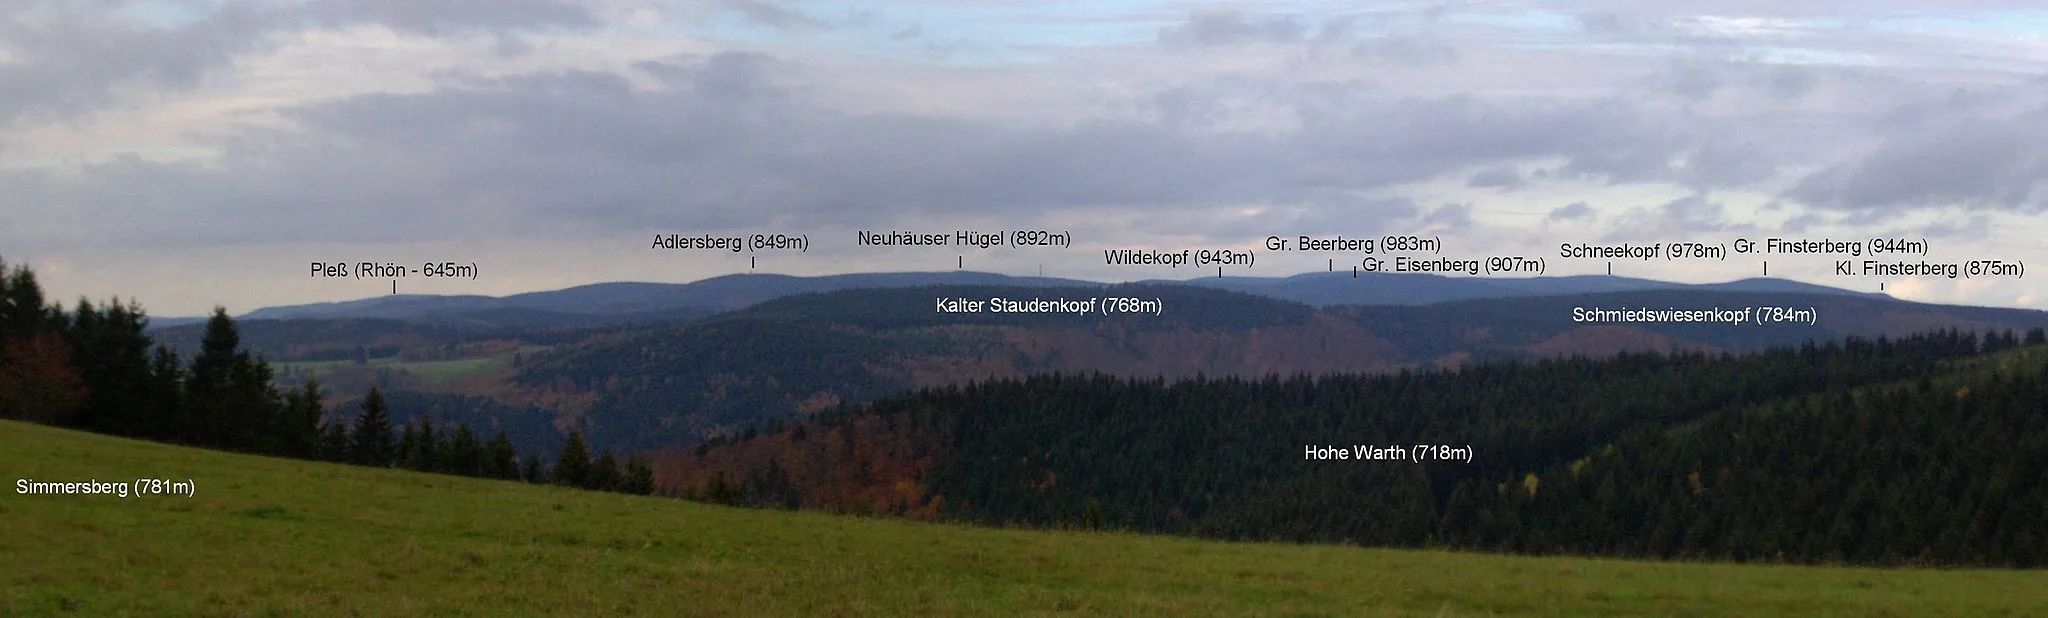 Photo showing: Blick vom Simmersberg (781 m) auf die höchsten Berge des Thüringer Waldes: Adlersberg (849 m) mit Neuhäuser Hügel (891 m), Großer Beerberg (teils verdeckt, 983 m), Wildekopf (943 m), Großer Eisenberg (907 m), Schneekopf (978 m), Großer (944 m) und Kleiner (875 m) Finsterberg; im Vordergrund Kalter Staudenkopf (768 m) und Schmiedswiesenkopf (784 m) - der Große Riesenhaupt (764 m) bei Frauenwald und der Große Hundskopf (824m) bei Allzunah schlössen sich rechts an - sowie der Nebengipfel Hohe Warth (718 m);  links im Hintergrund der 52 km entfernte Pleß (645 m) in der Vorderen Rhön